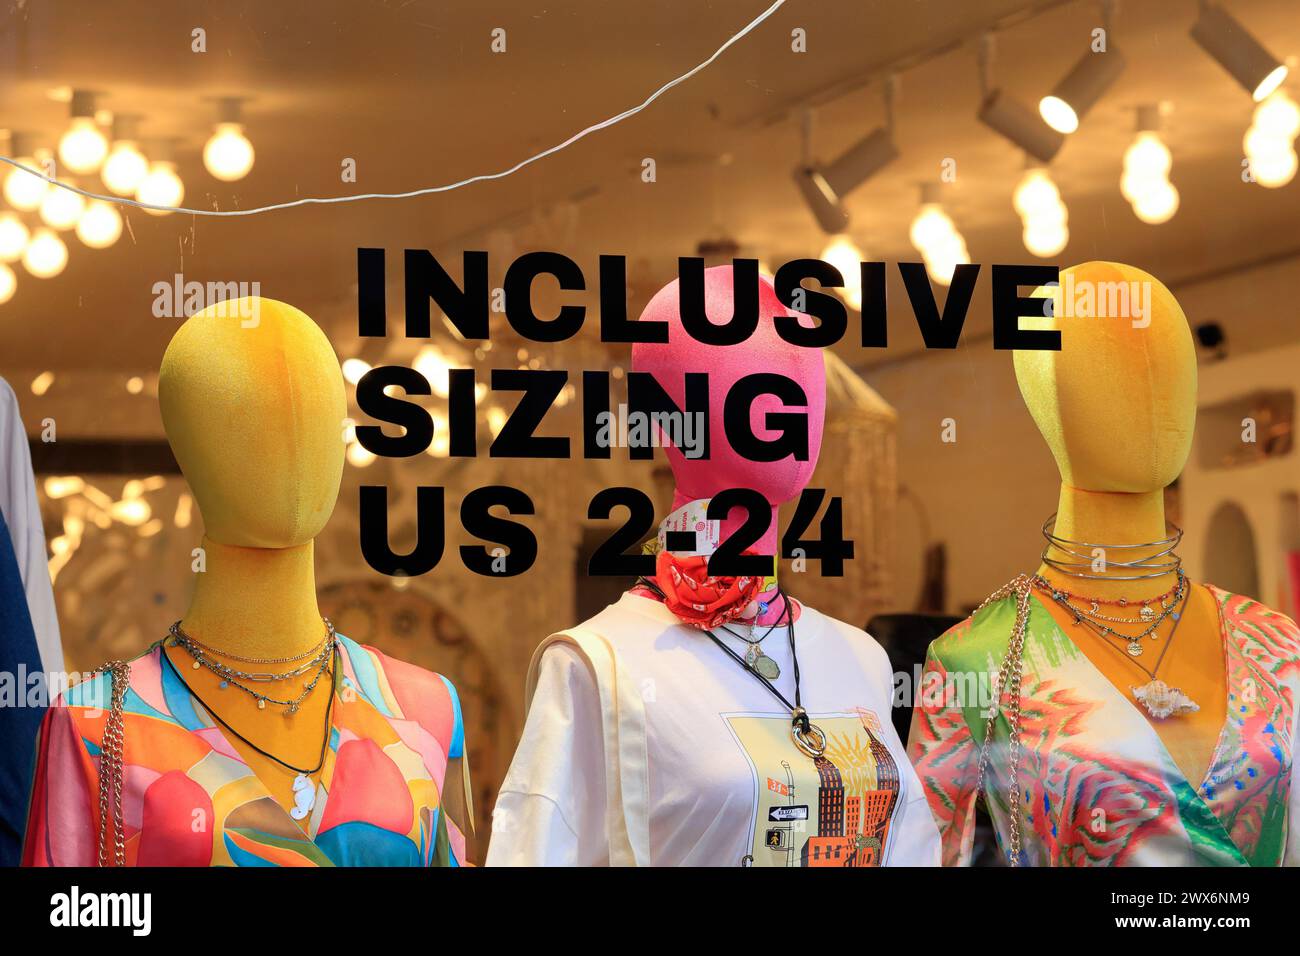 Vetrina pubblicitaria "Inclusive Sizing US 2-24" presso la boutique di abbigliamento Never fully Dressed, 243 Elizabeth St, New York City. Foto Stock